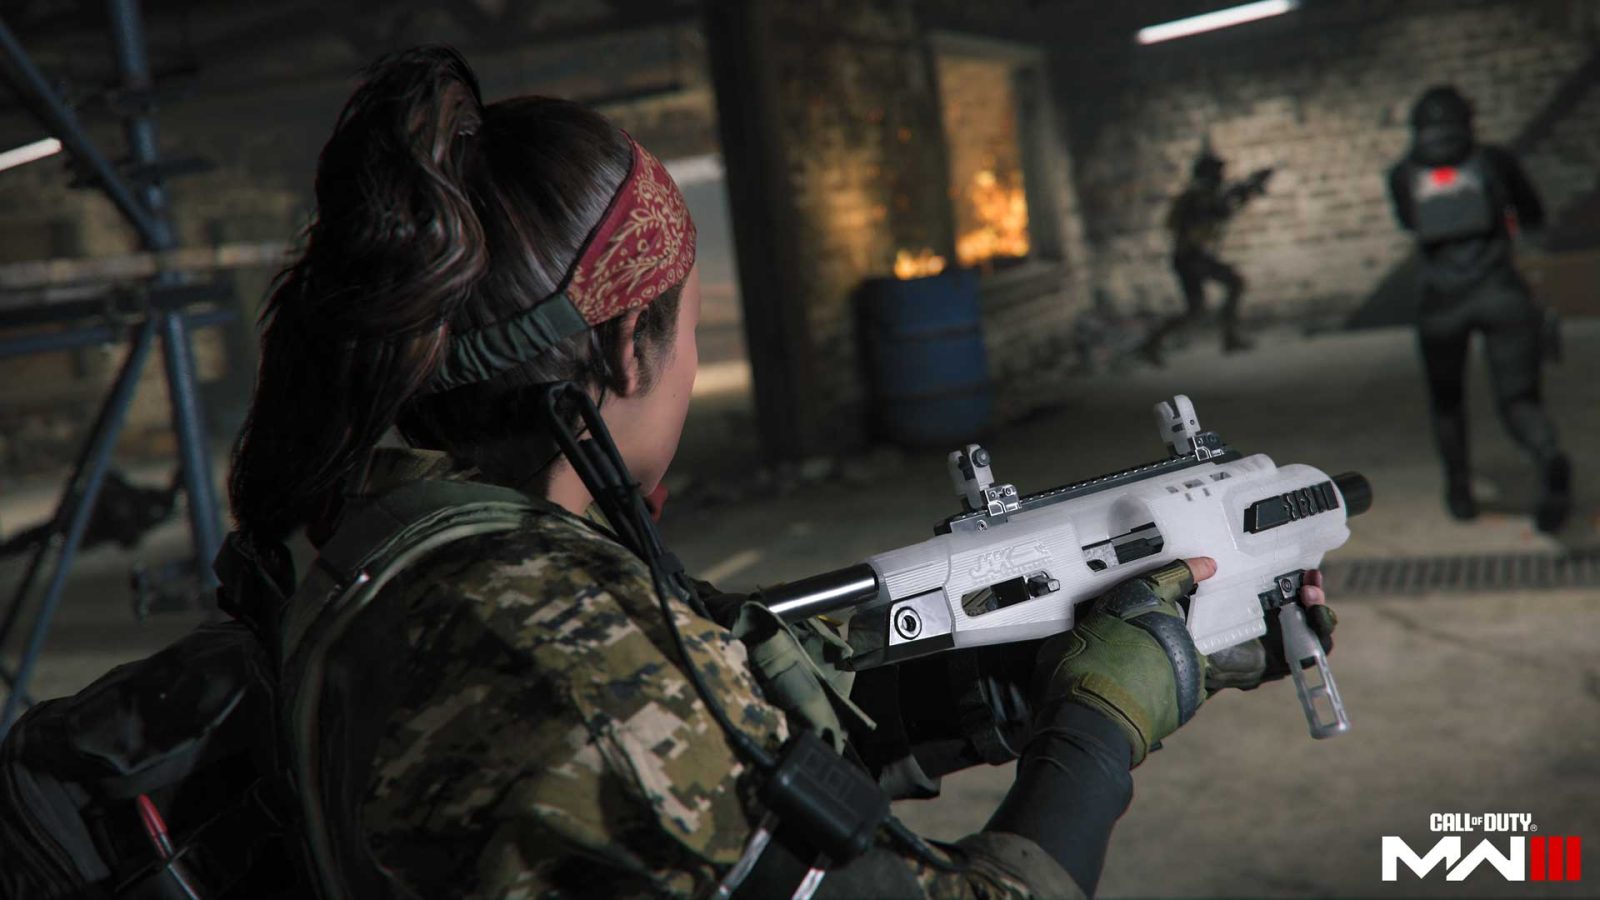 Buy Call of Duty: Modern Warfare III on PlayStation 5